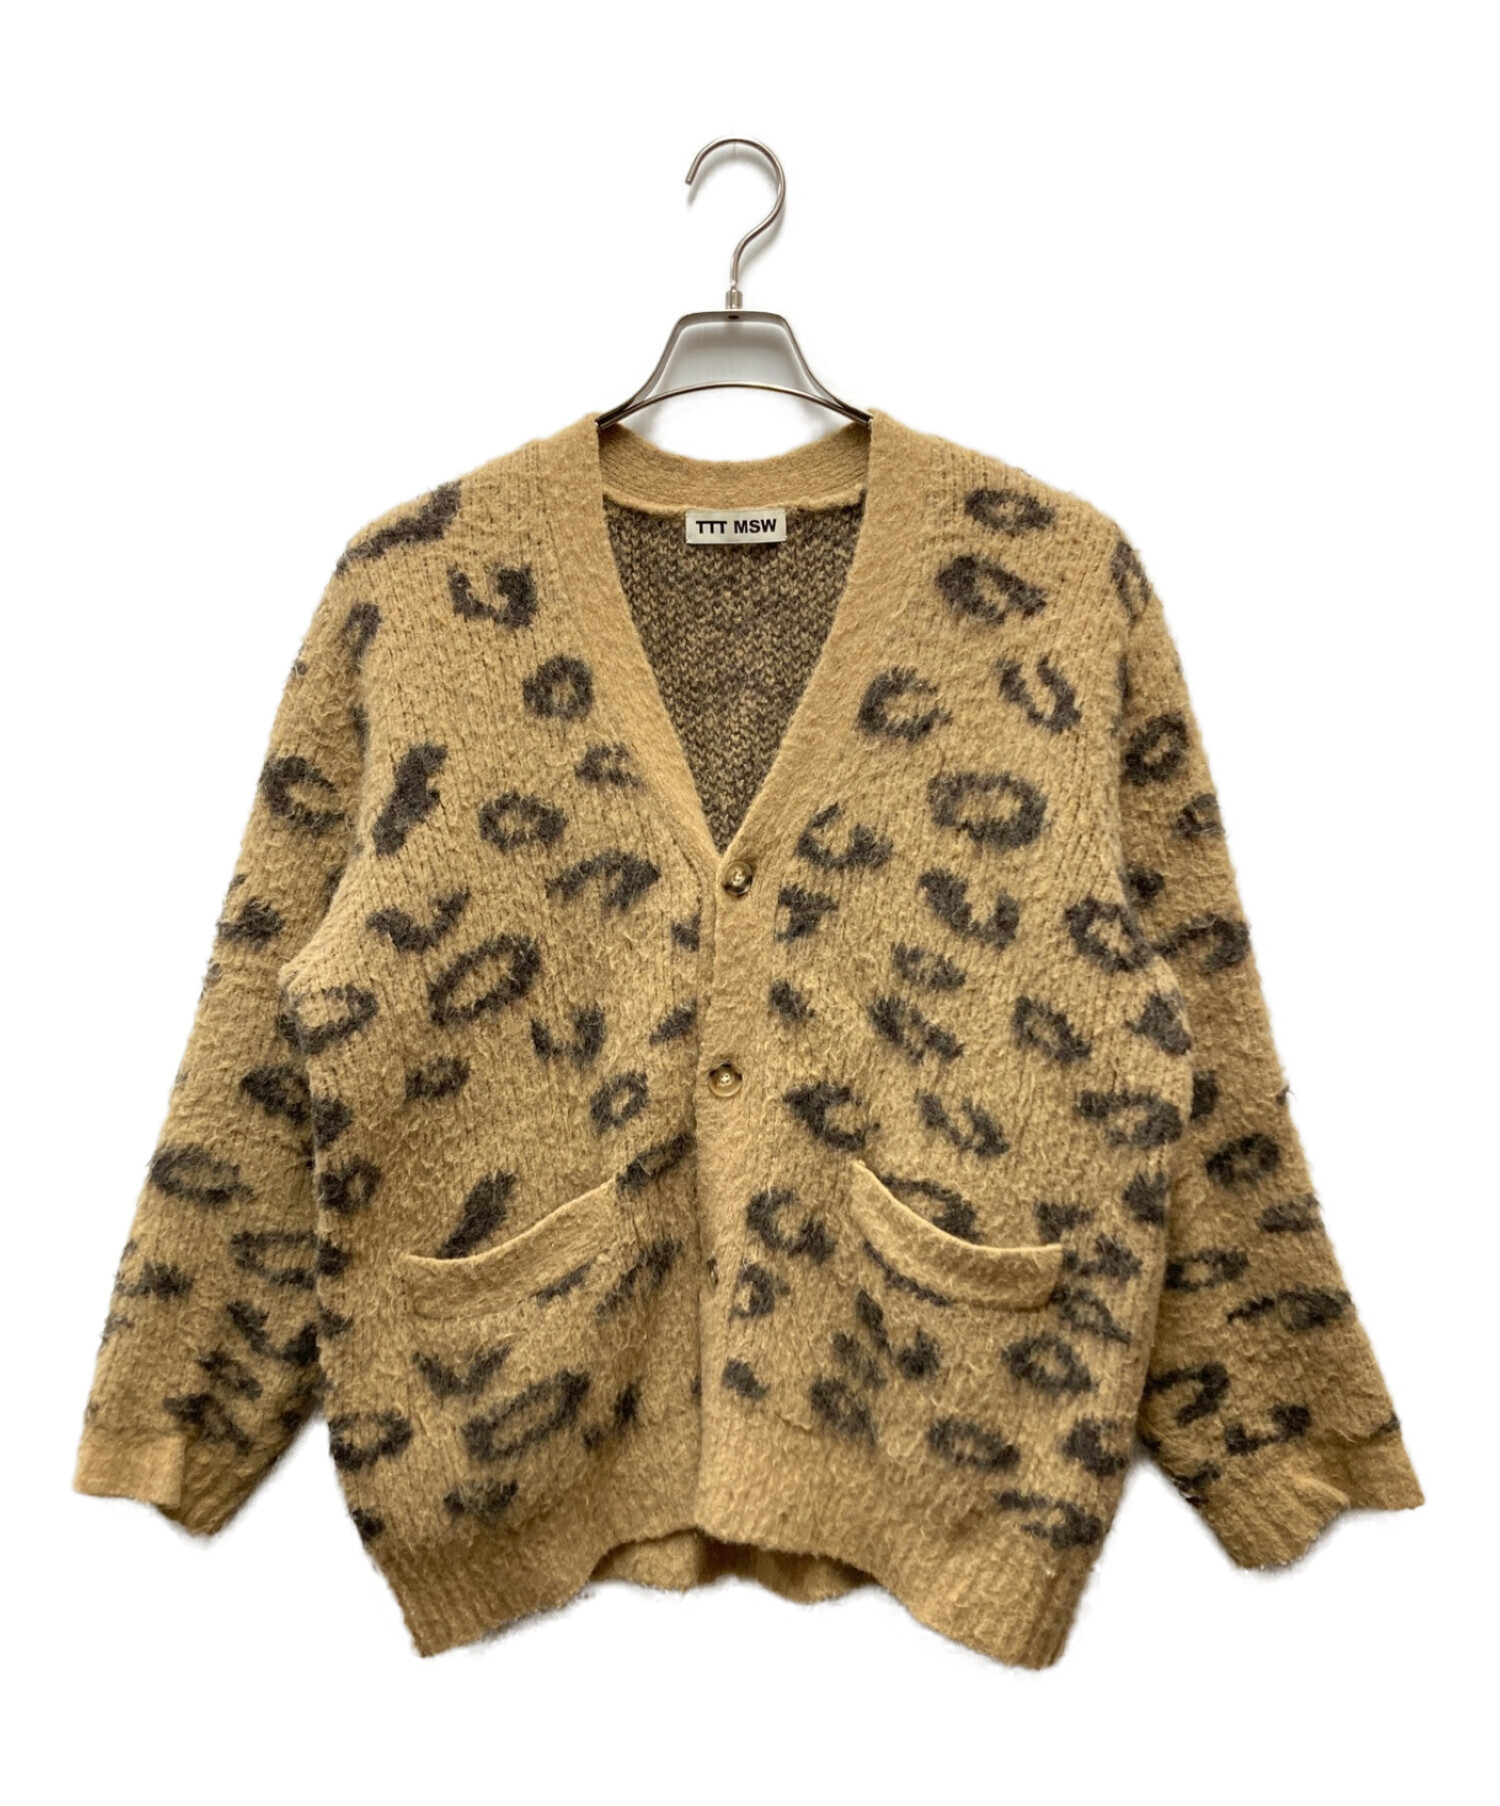 ttt_msw leopard mohair cardigan - ファッション